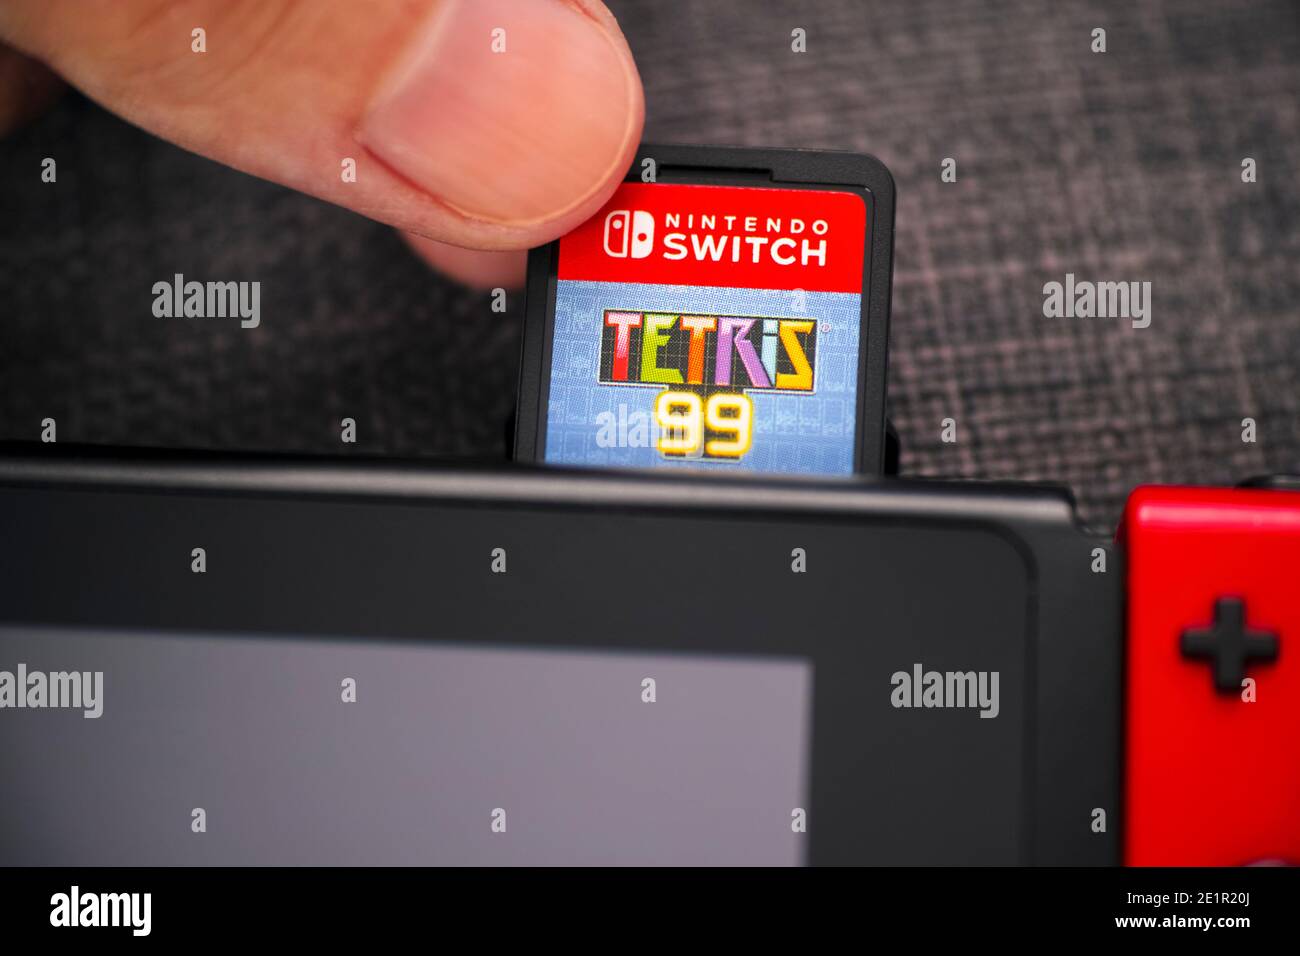 Tambov, Fédération de Russie - 01 janvier 2021 des doigts d'homme insérant  la cartouche de jeu vidéo Tetris 99 dans la console de jeu vidéo Nintendo  Switch. Fermer Photo Stock - Alamy